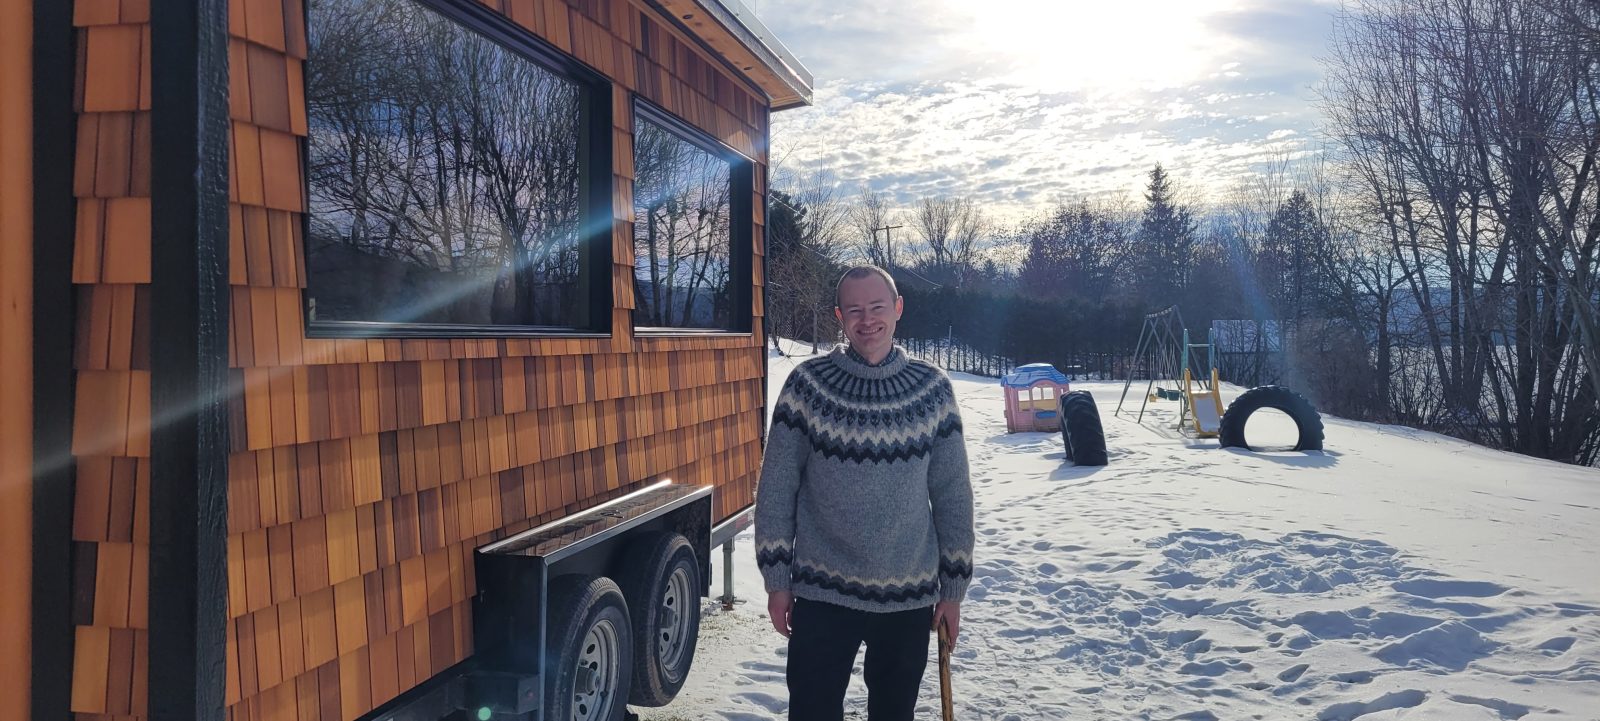 North Hatley sauna seeks to import Scandinavian custom to Quebec winter culture